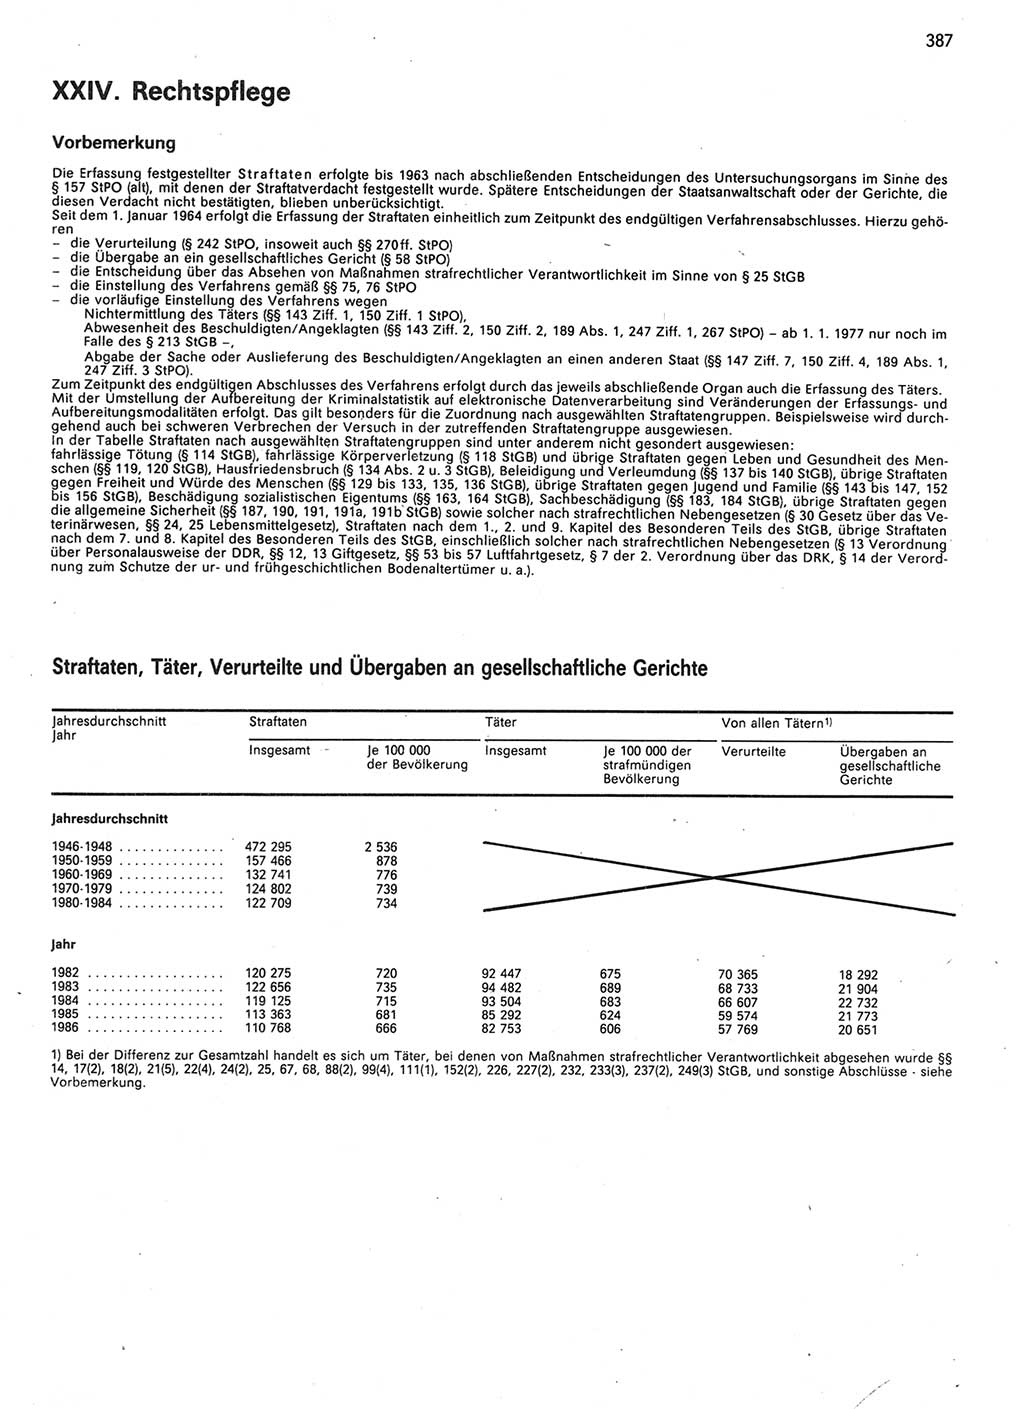 Statistisches Jahrbuch der Deutschen Demokratischen Republik (DDR) 1987, Seite 387 (Stat. Jb. DDR 1987, S. 387)